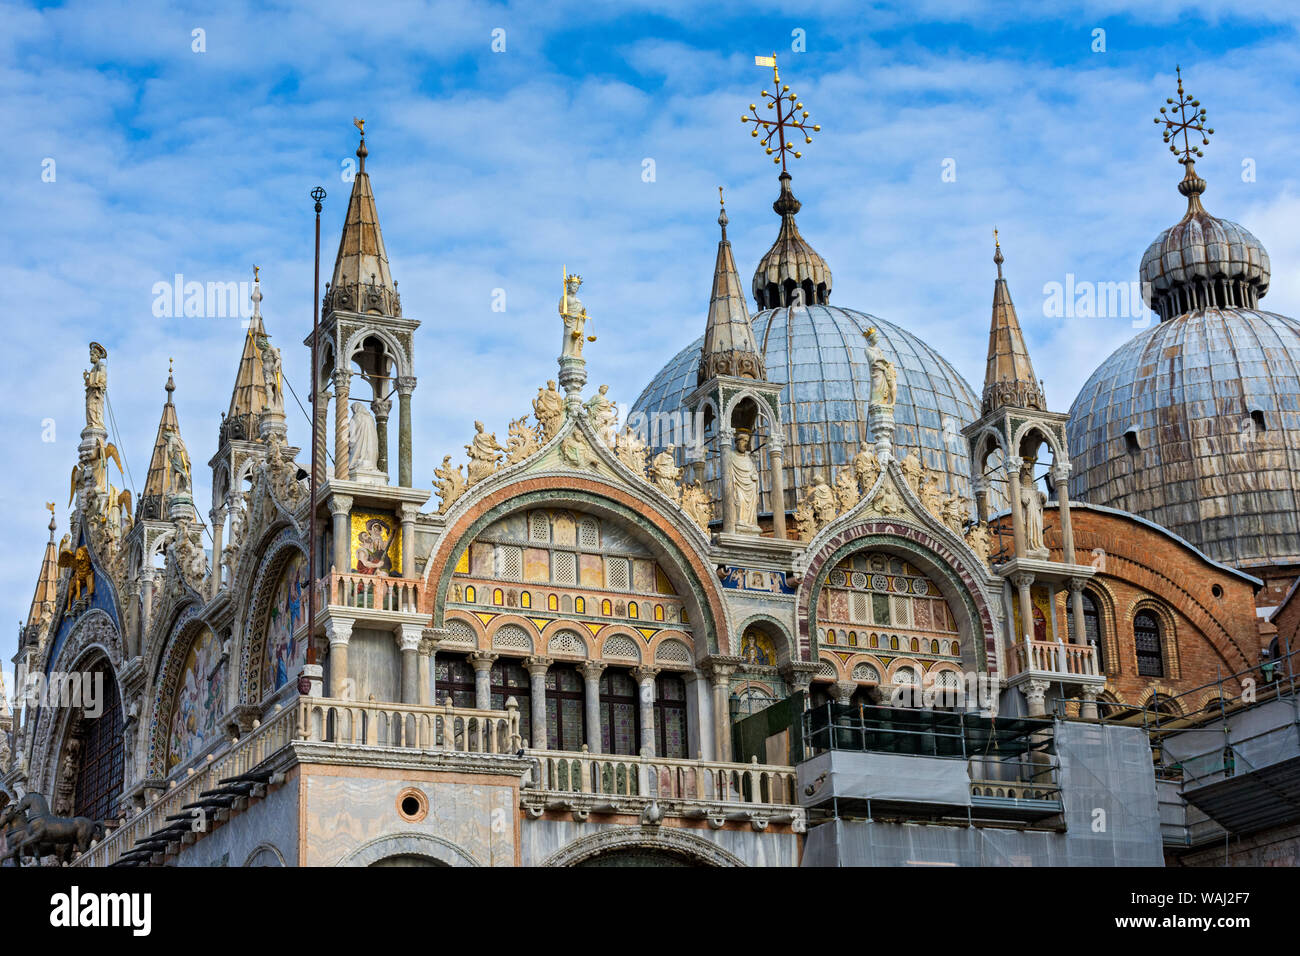 Dettaglio della facciata sud della Basilica di San Marco la Basilica di San Marco), Piazza San Marco, Venezia, Italia Foto Stock